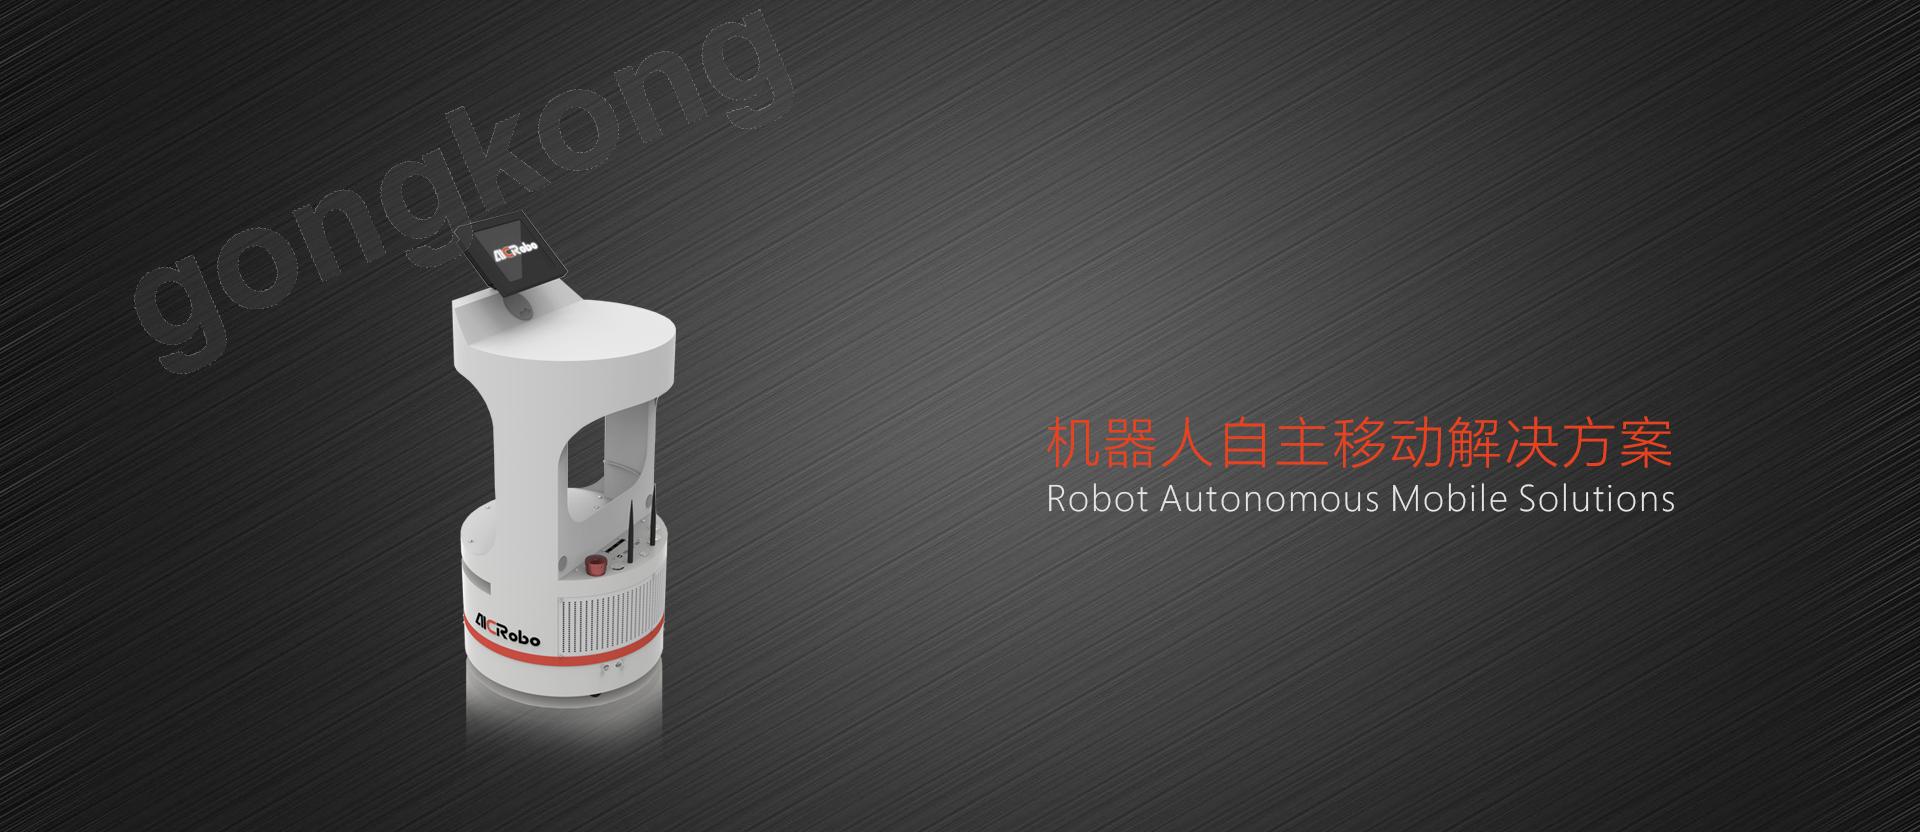 AICRobo工业自主搬运机器人首测：助力工业自动化降本提效